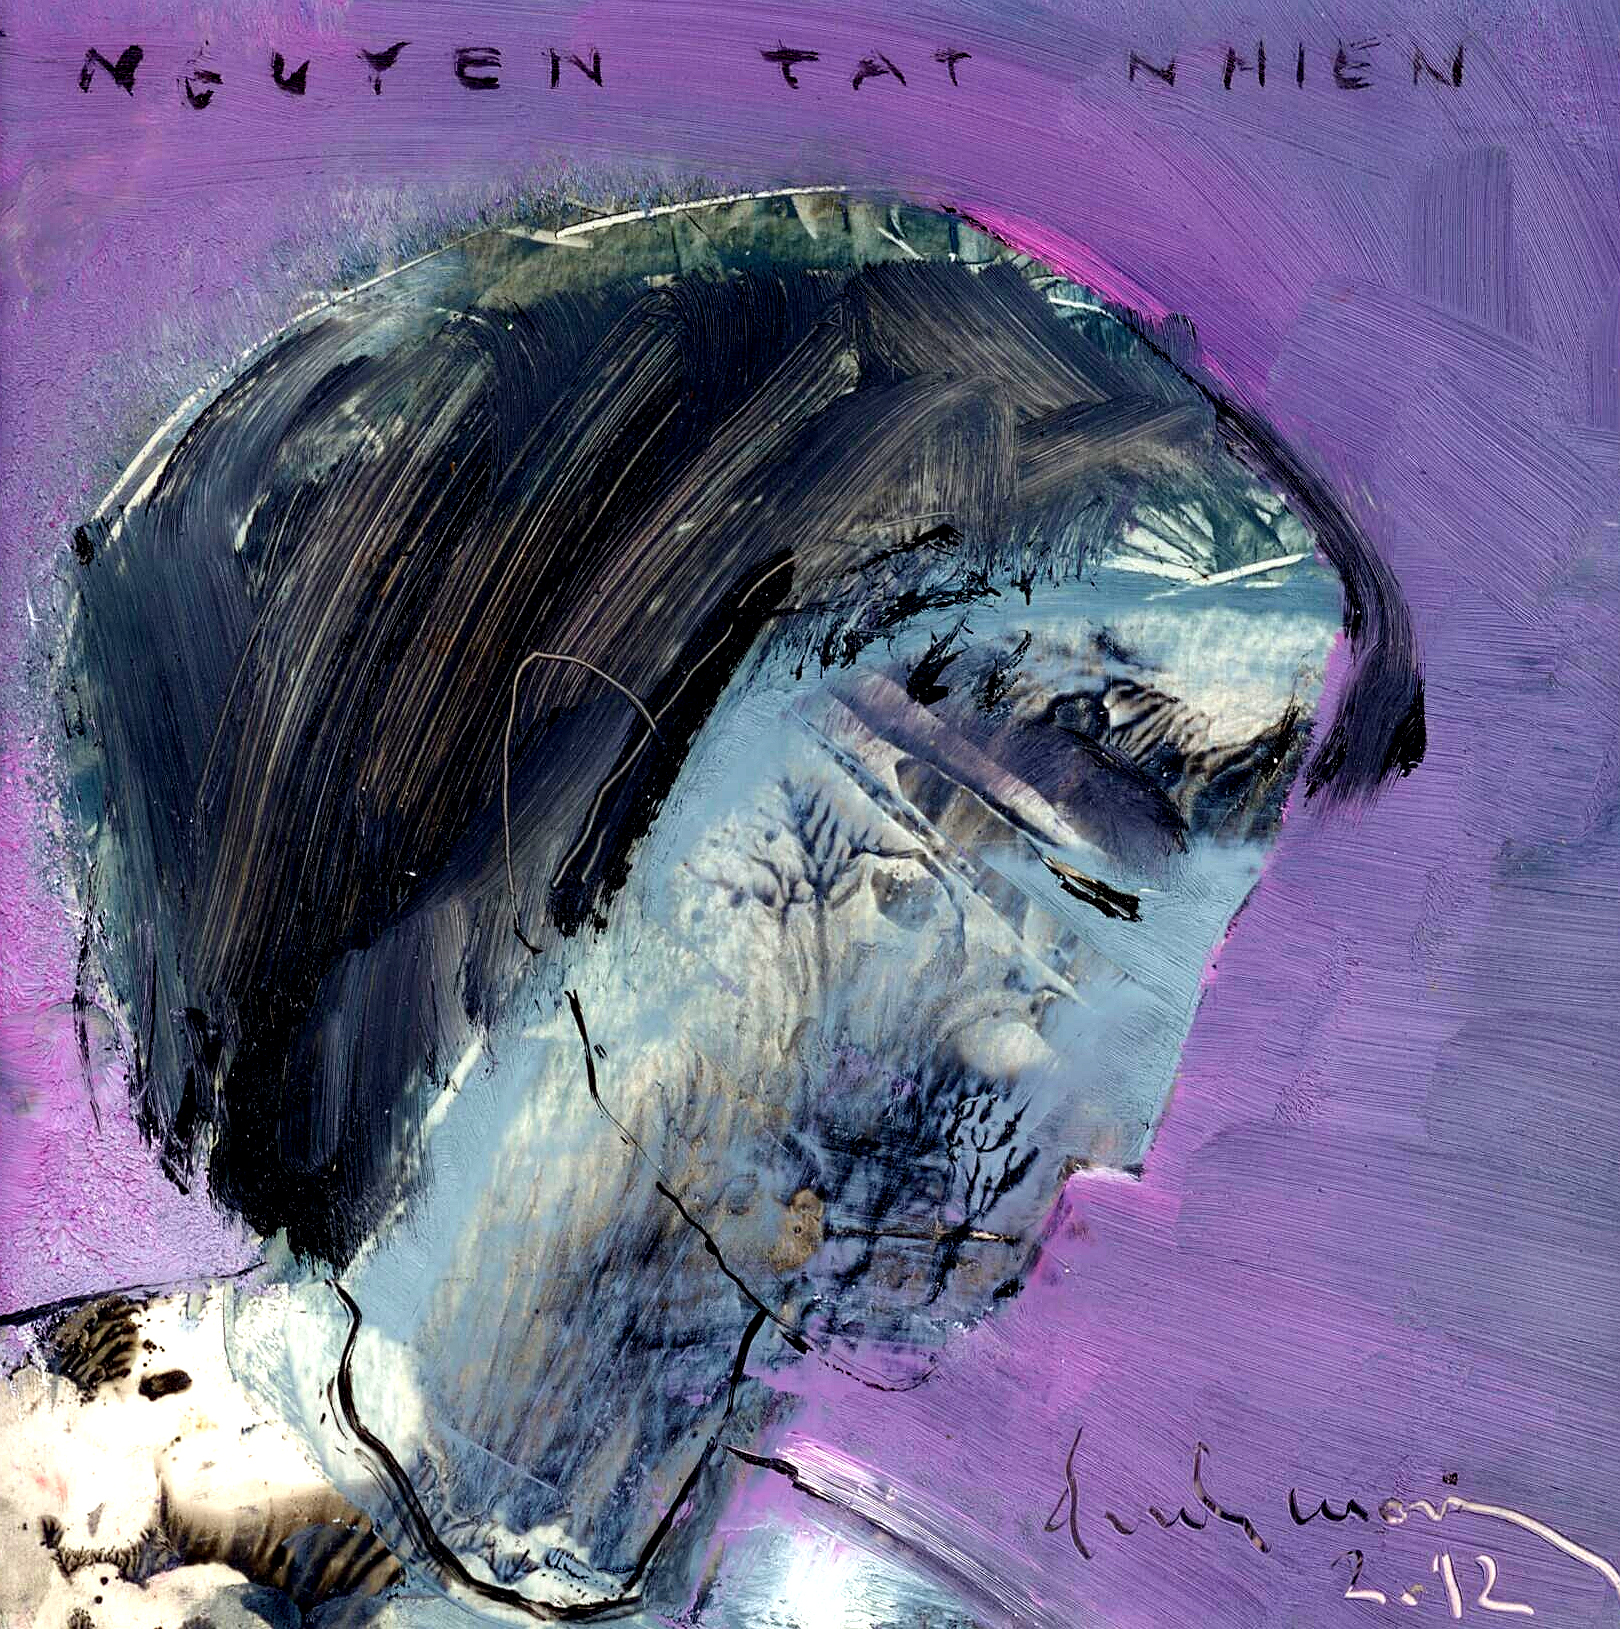 Nhà thơ Nguyễn Tất Nhiên (1952-1992) qua nét vẽ Đinh Cường.